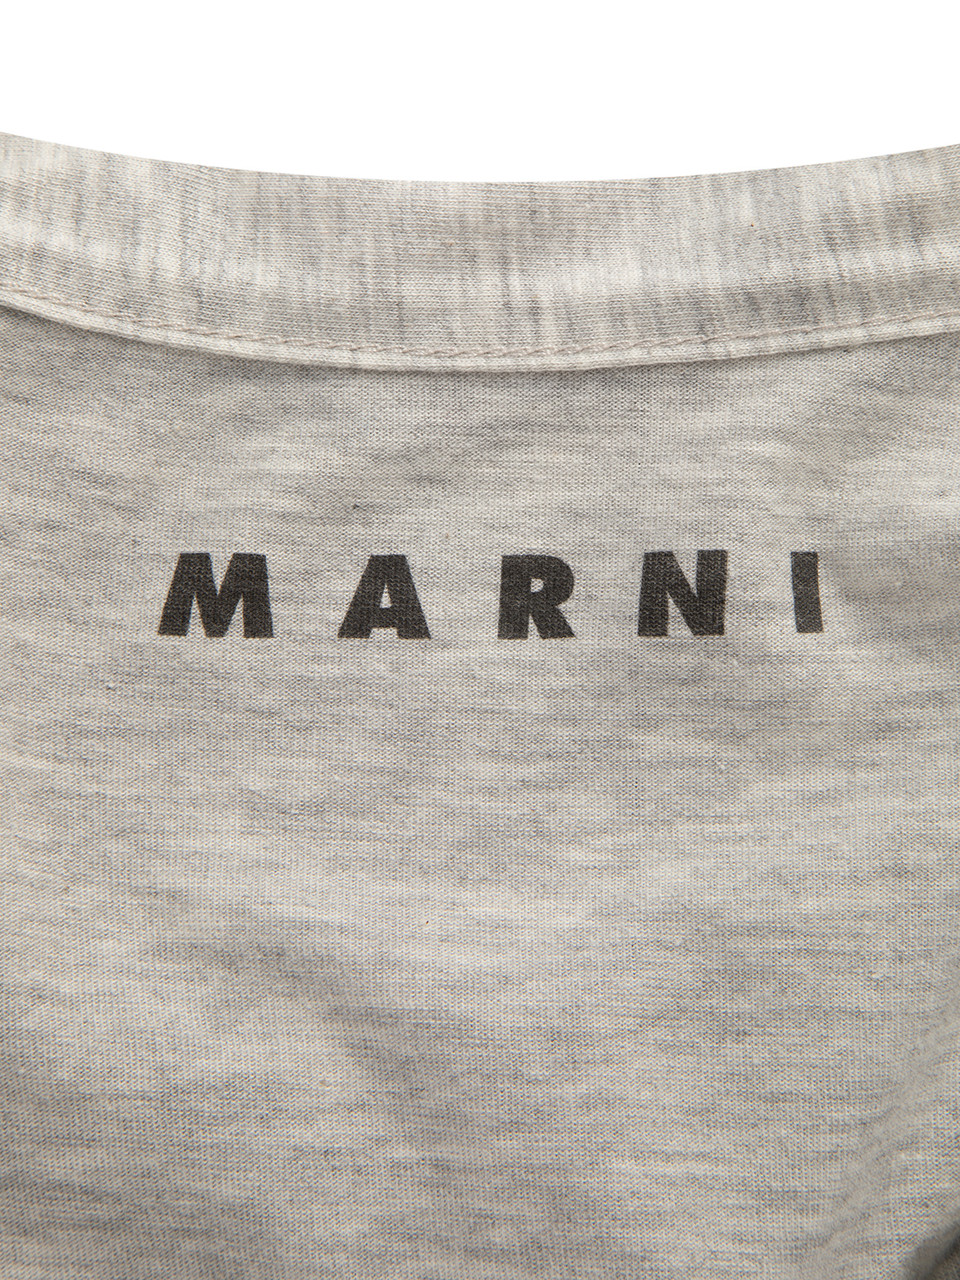 Marni Limited Edition Richard Prince for Marni Cotton Top